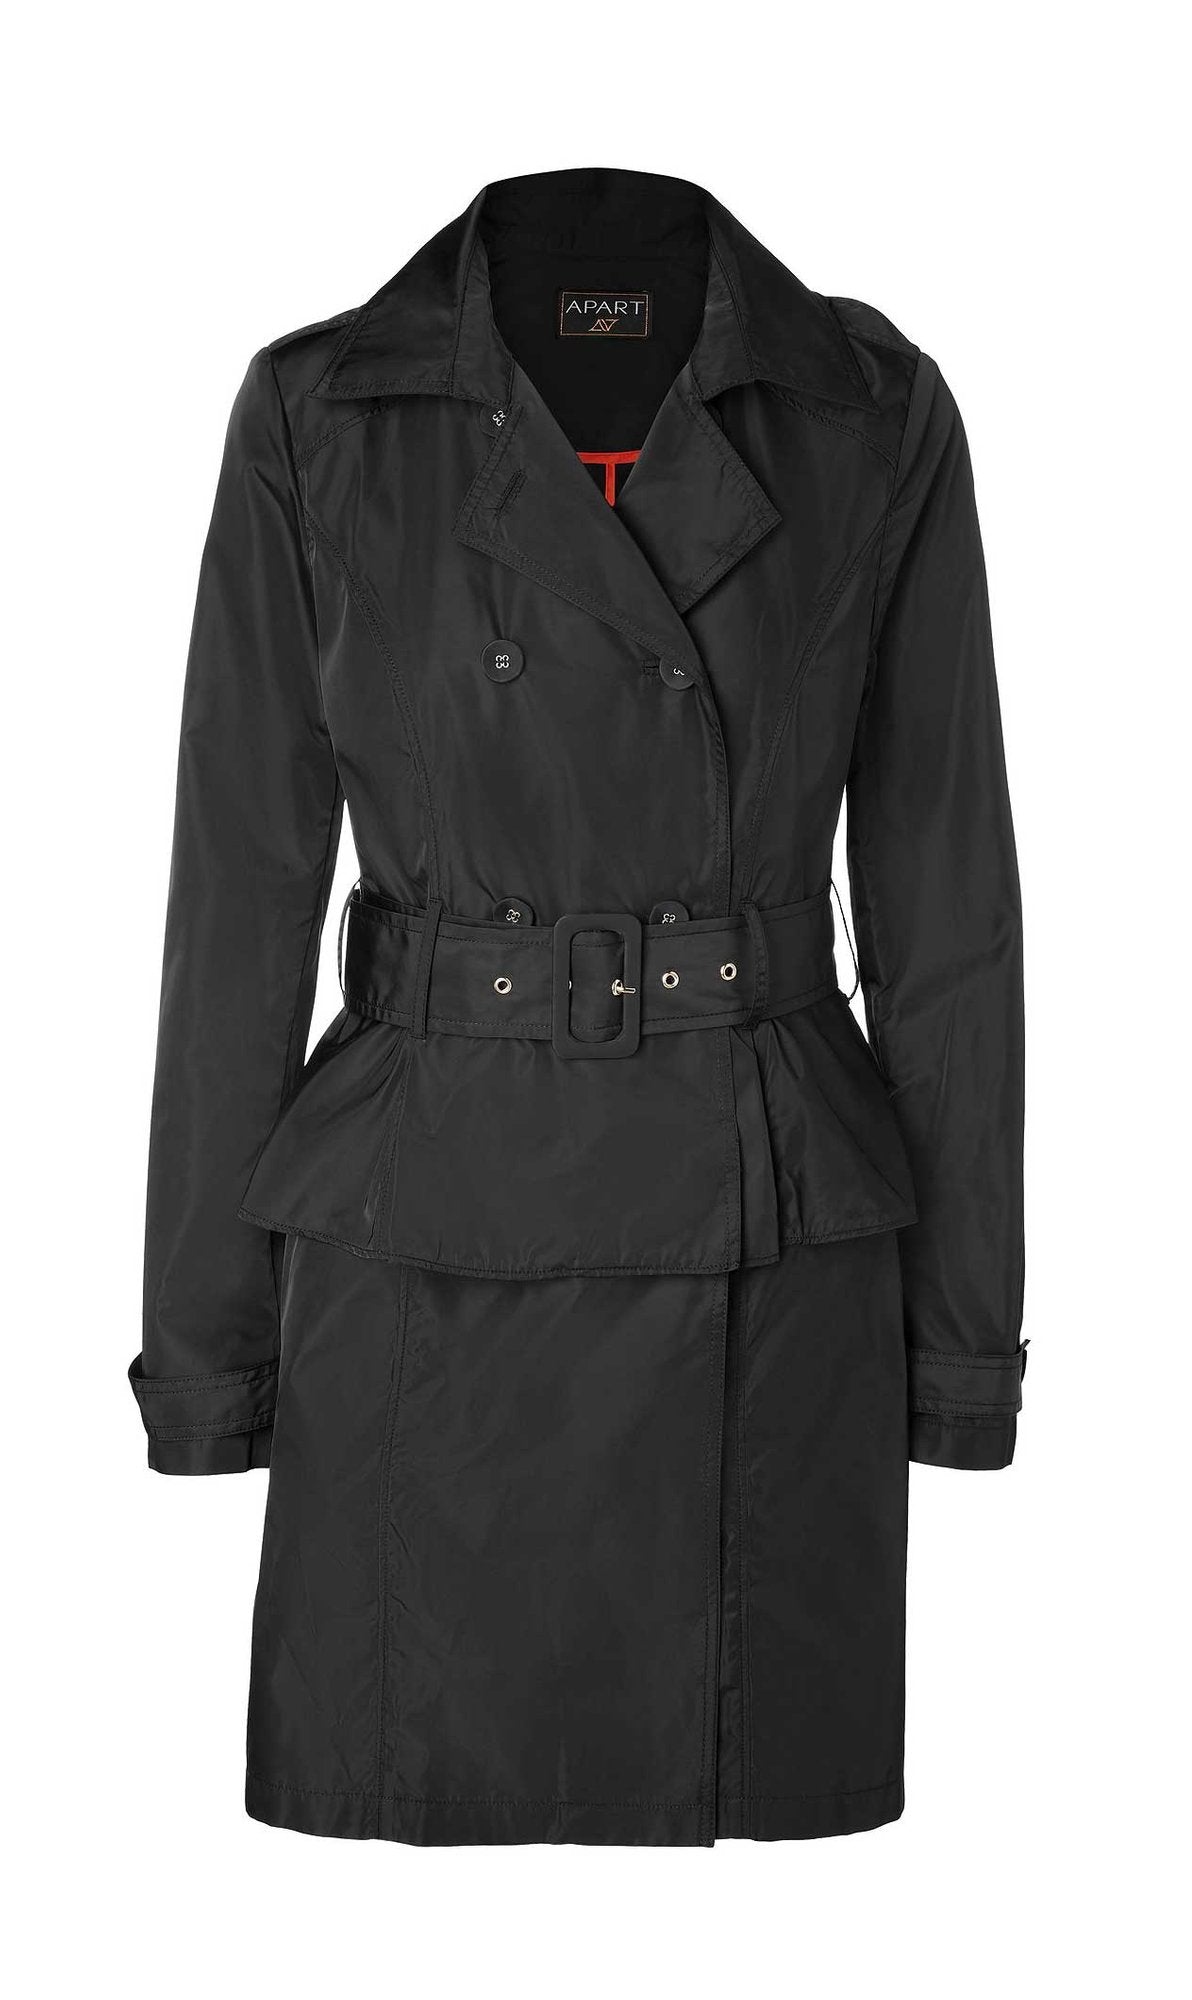 APART Damen 2-in-1-Trenchcoat, schwarz